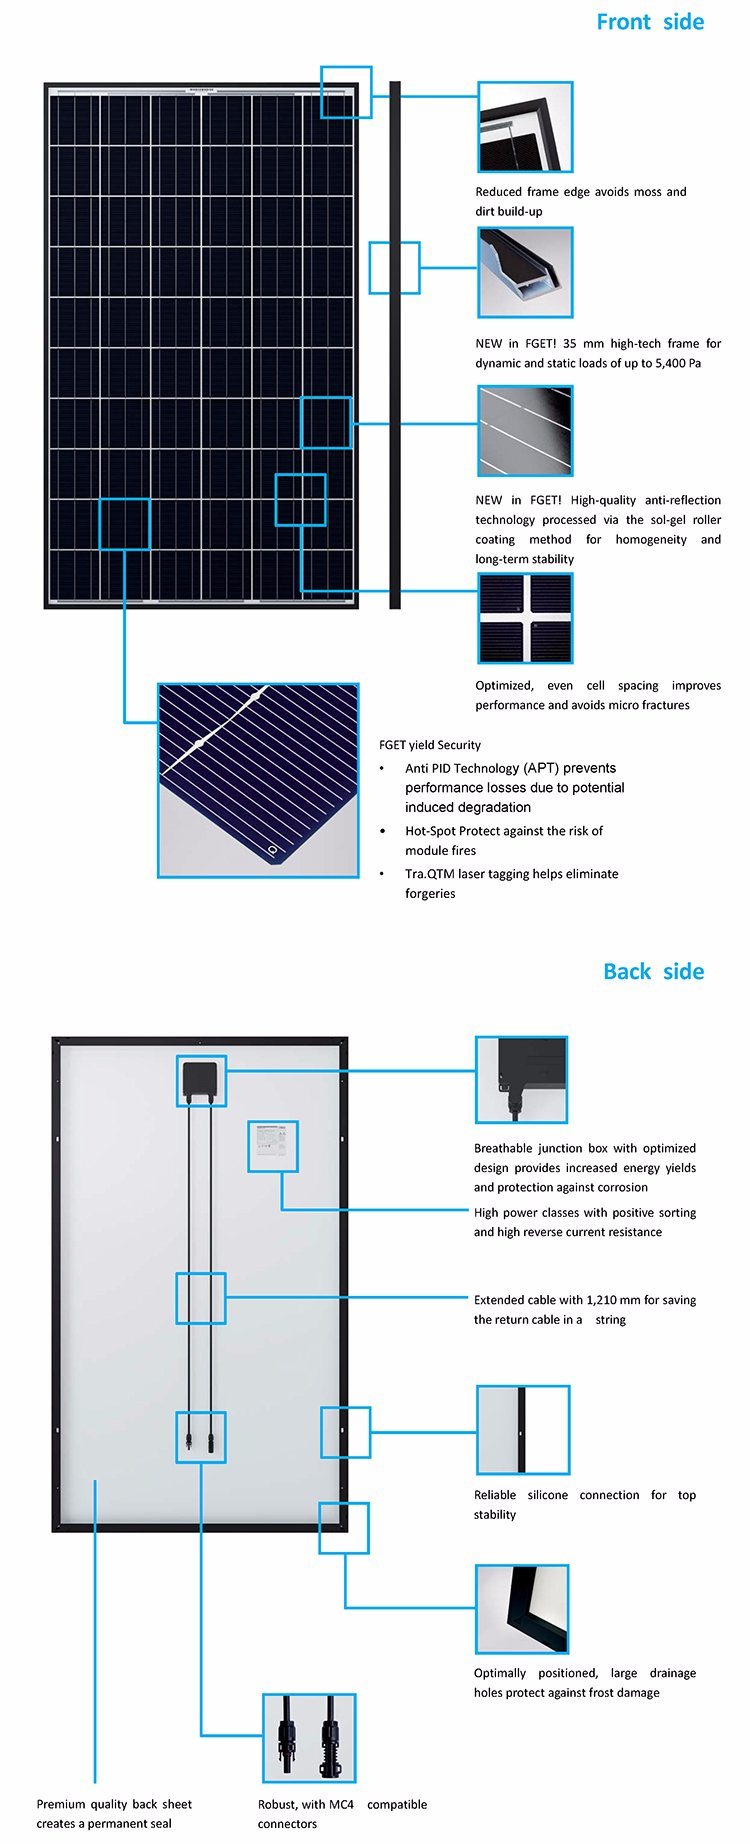 لوحة شمسية أحادية الكهروضوئية ذات كفاءة عالية بقدرة 250 وات